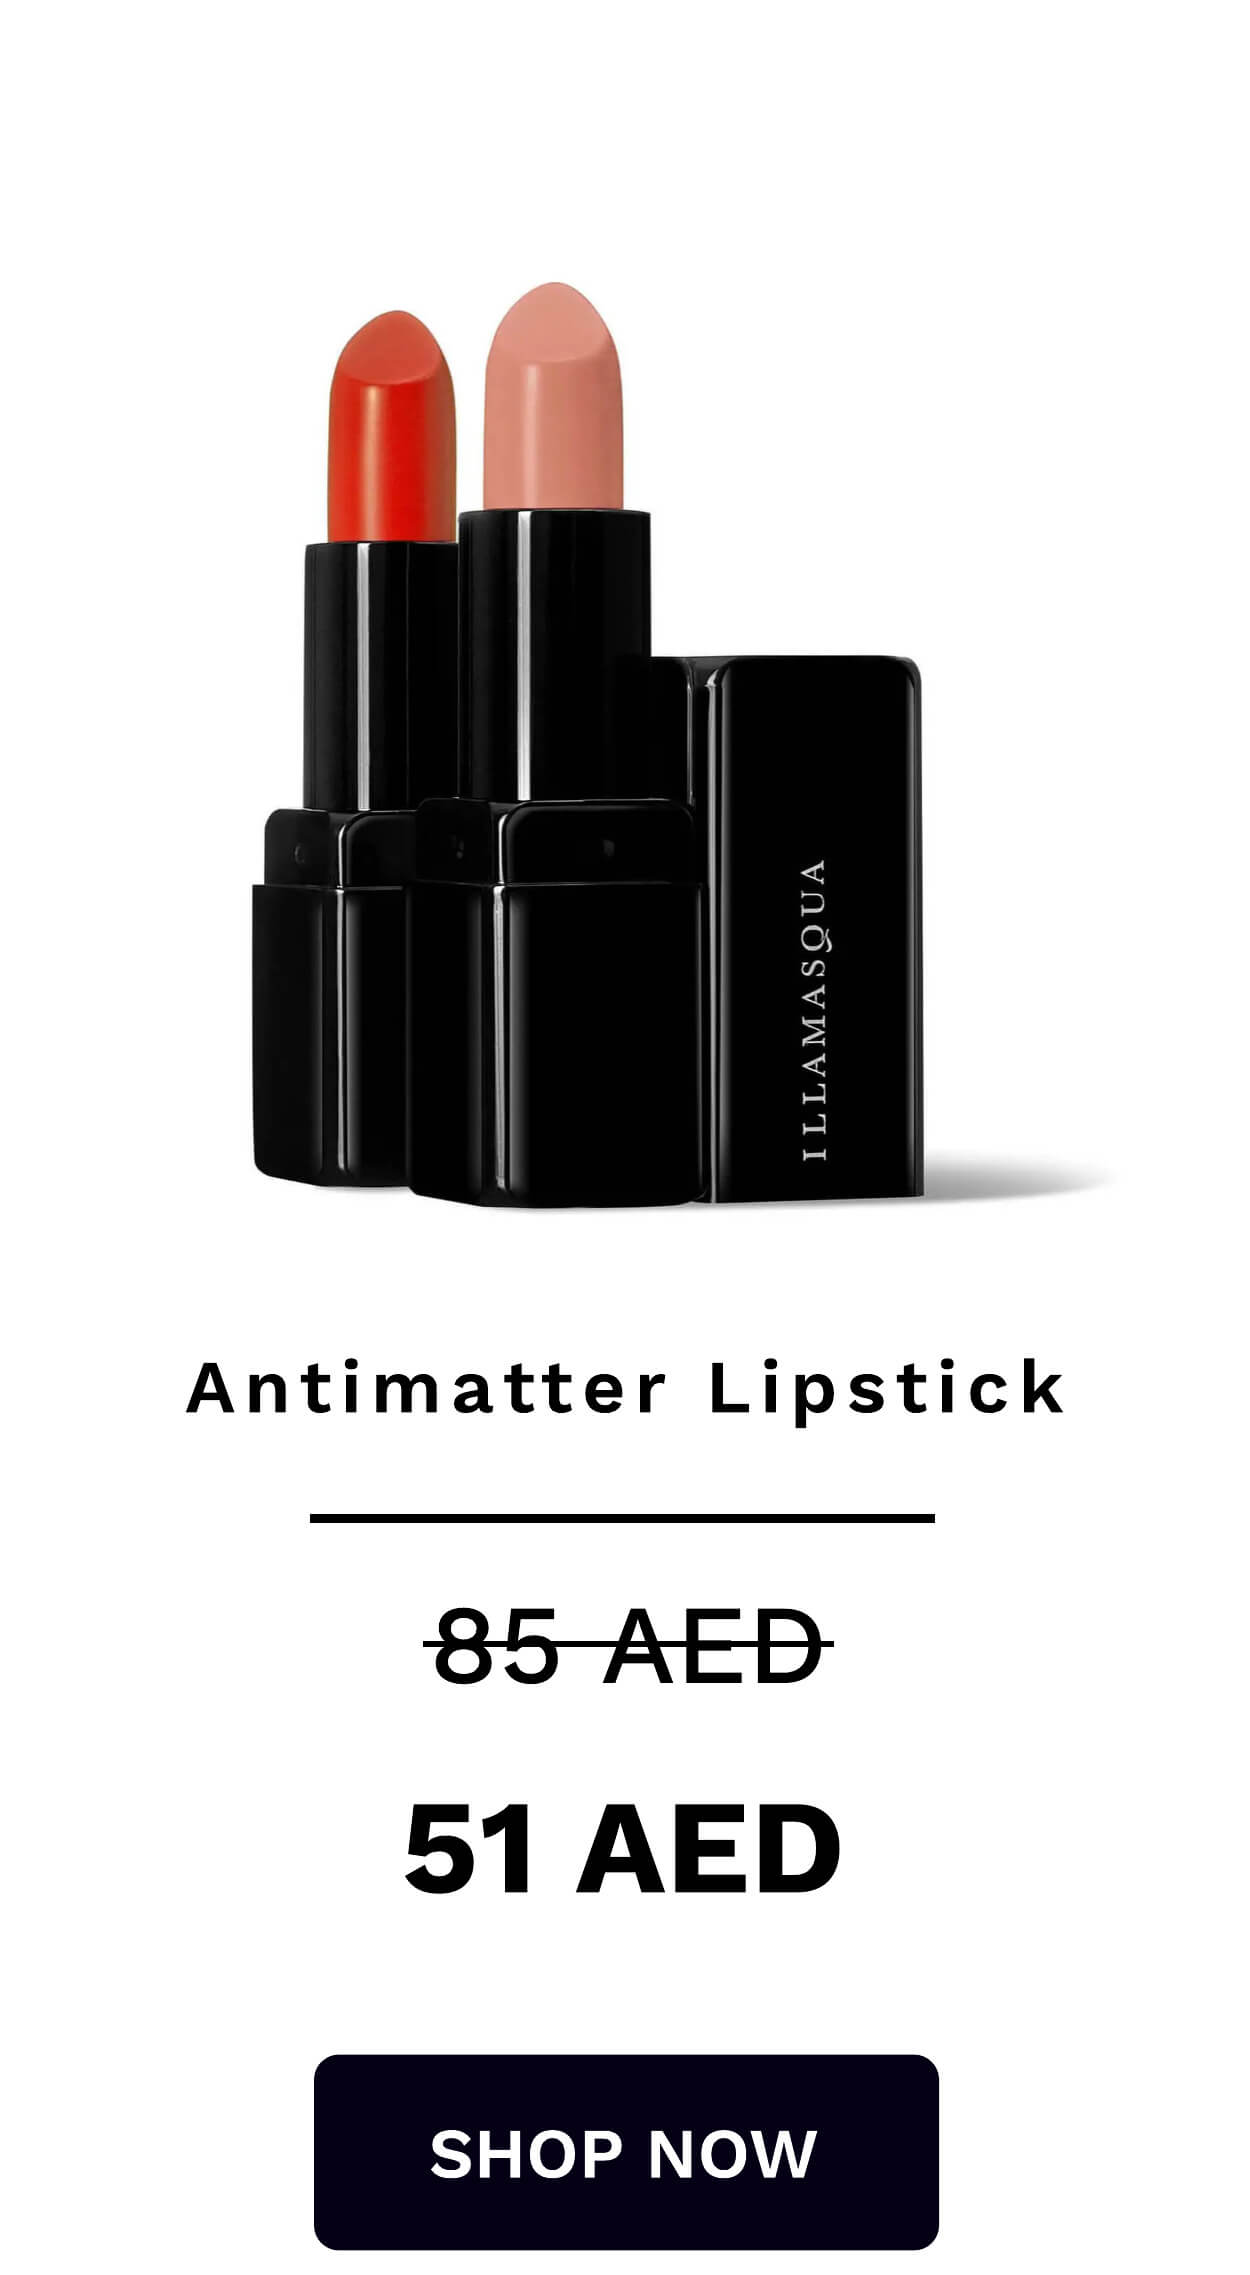 ILLAMASQUA Antimatter Lipstick 85AED 51 AED SHOP NOW 